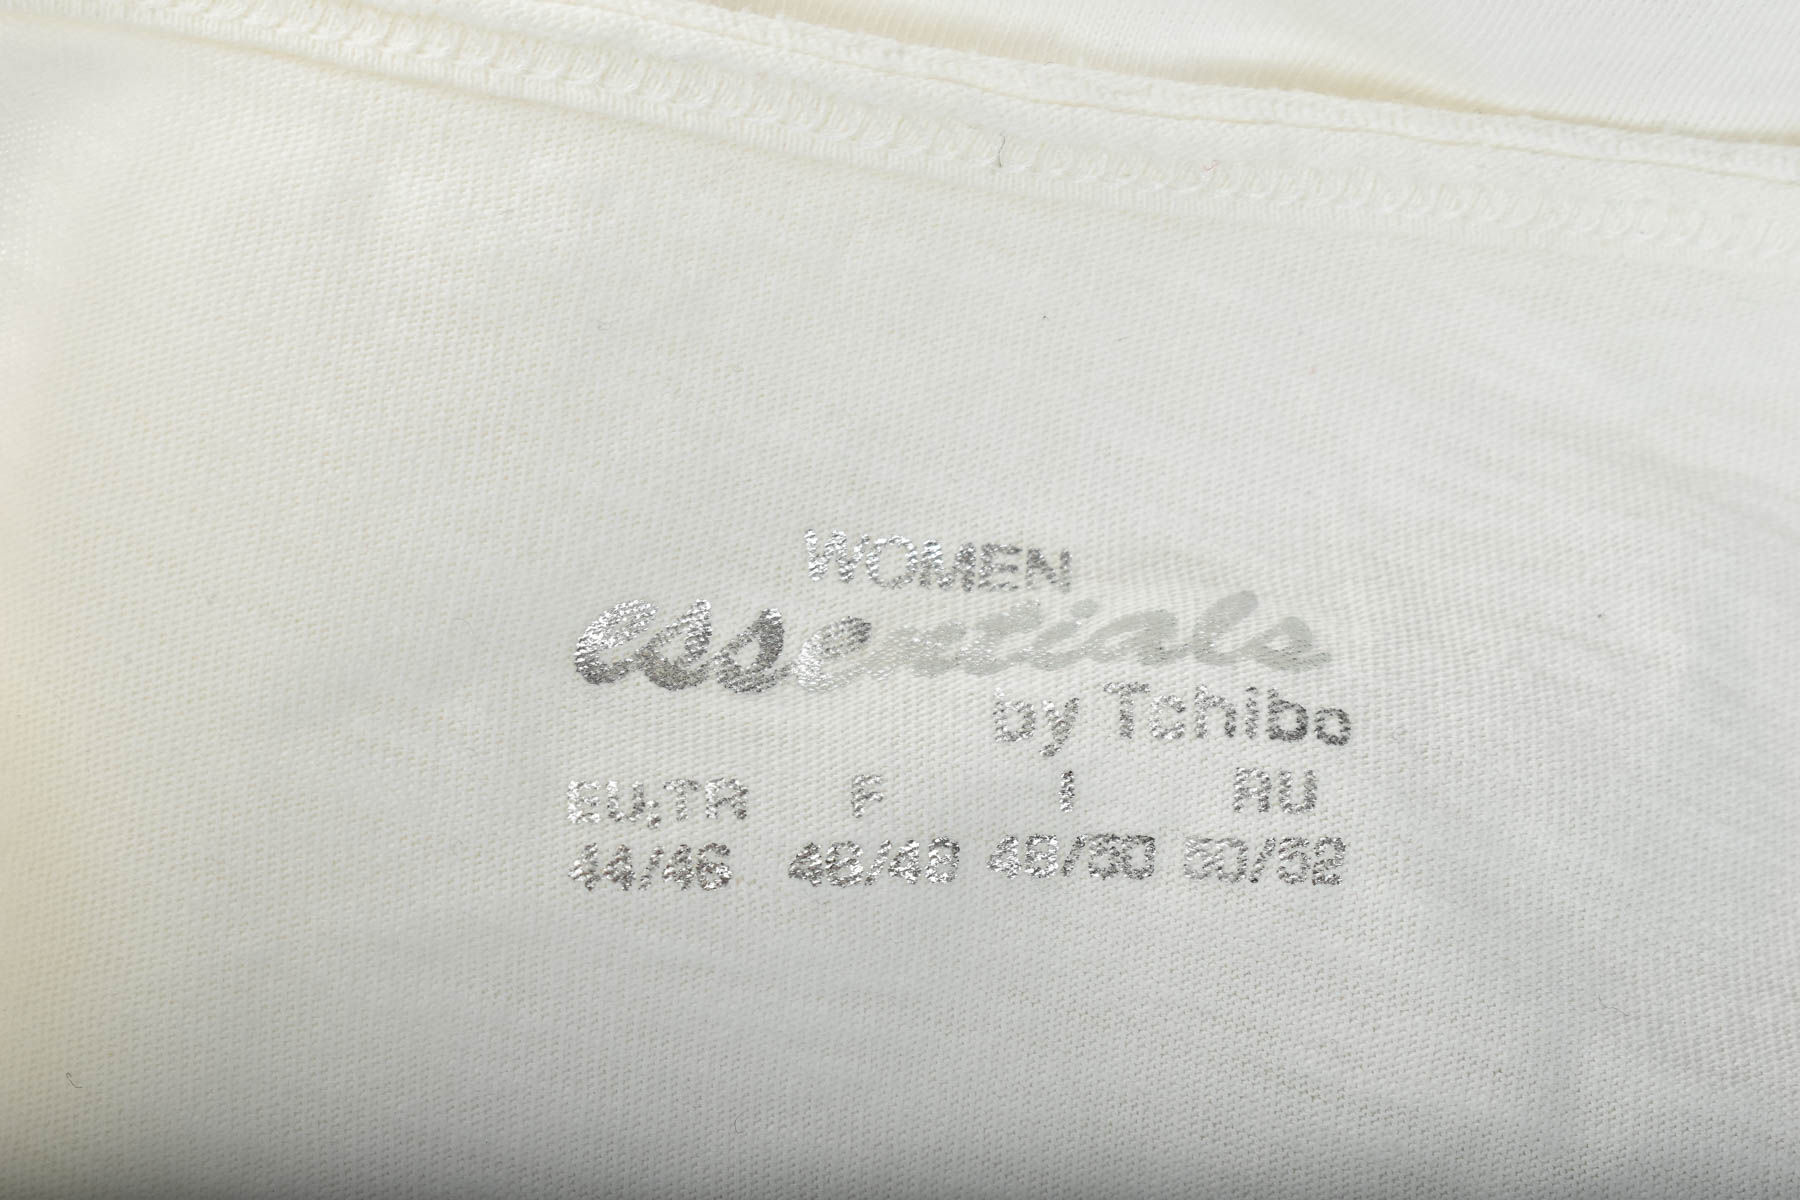 Γυναικεία μπλούζα - WOMEN essentials by Tchibo - 2